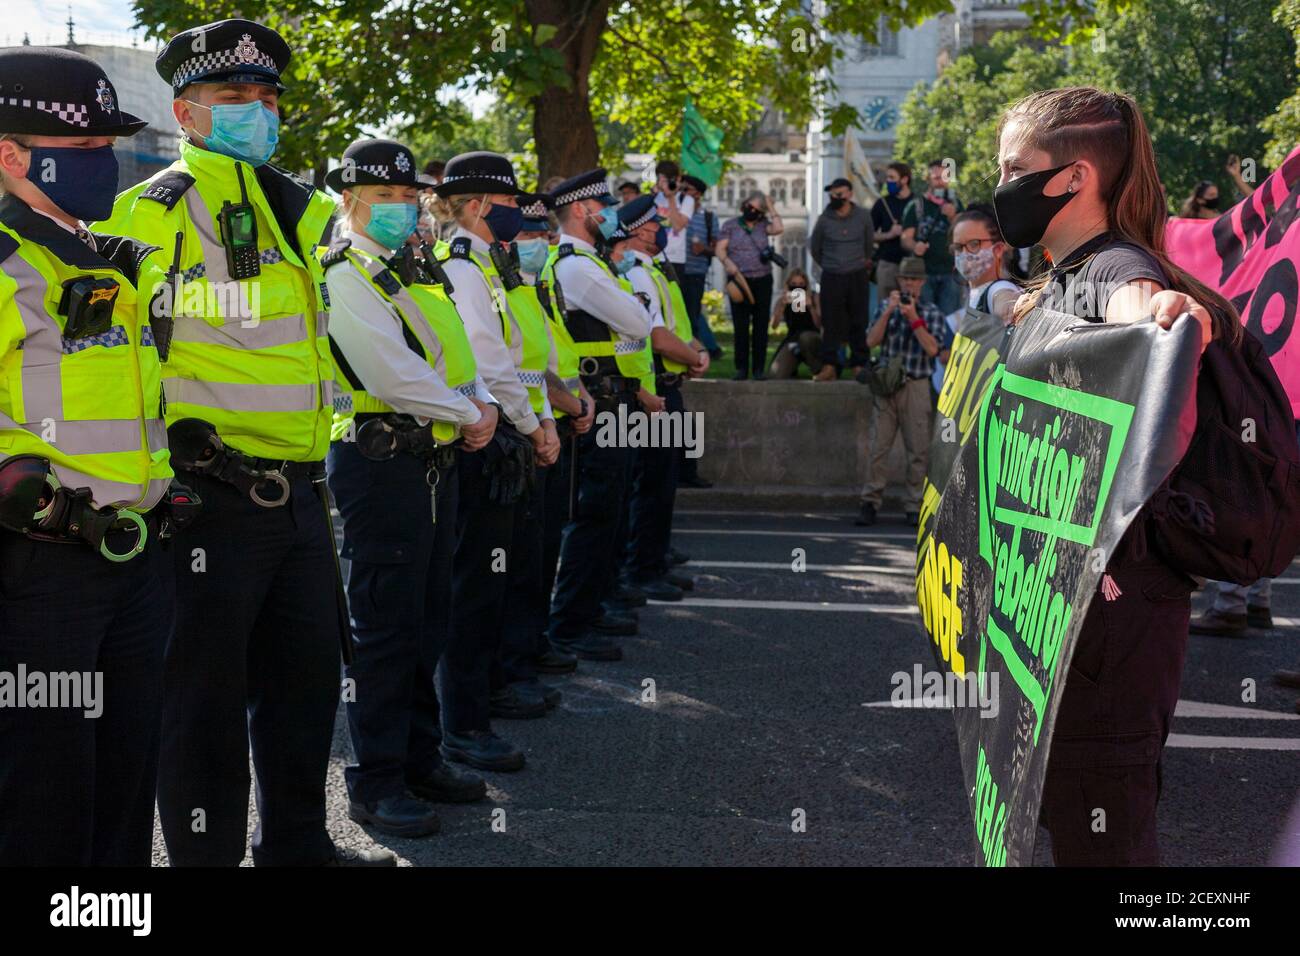 Police et extinction les manifestants de la rébellion se confrontent lors des manifestations de 2020 devant les chambres du Parlement. Londres, Angleterre, Royaume-Uni Banque D'Images